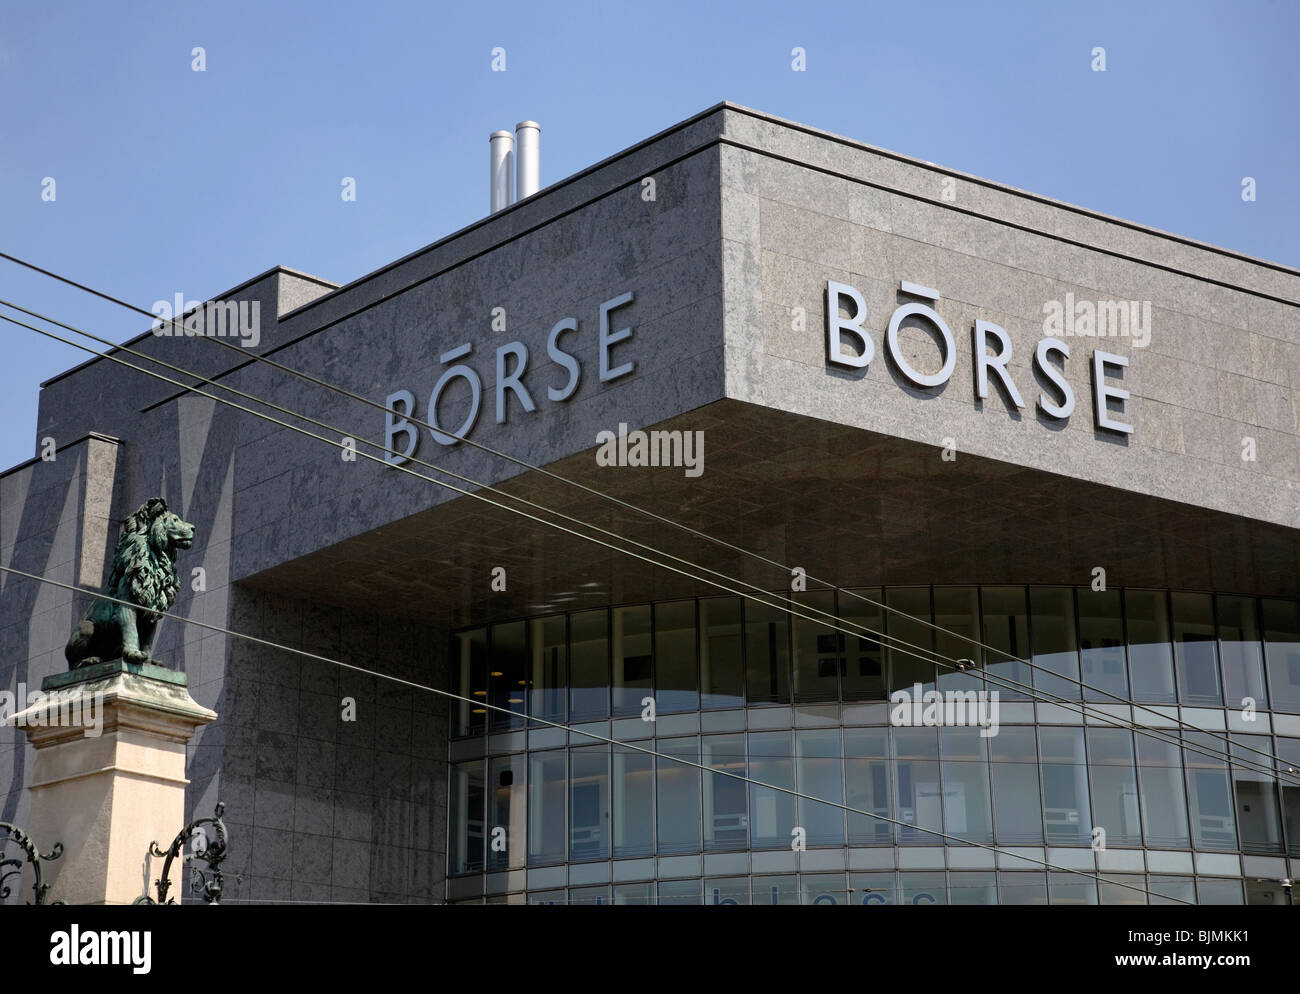 Boerse building, Zurich, Switzerland Stock Photo - Alamy